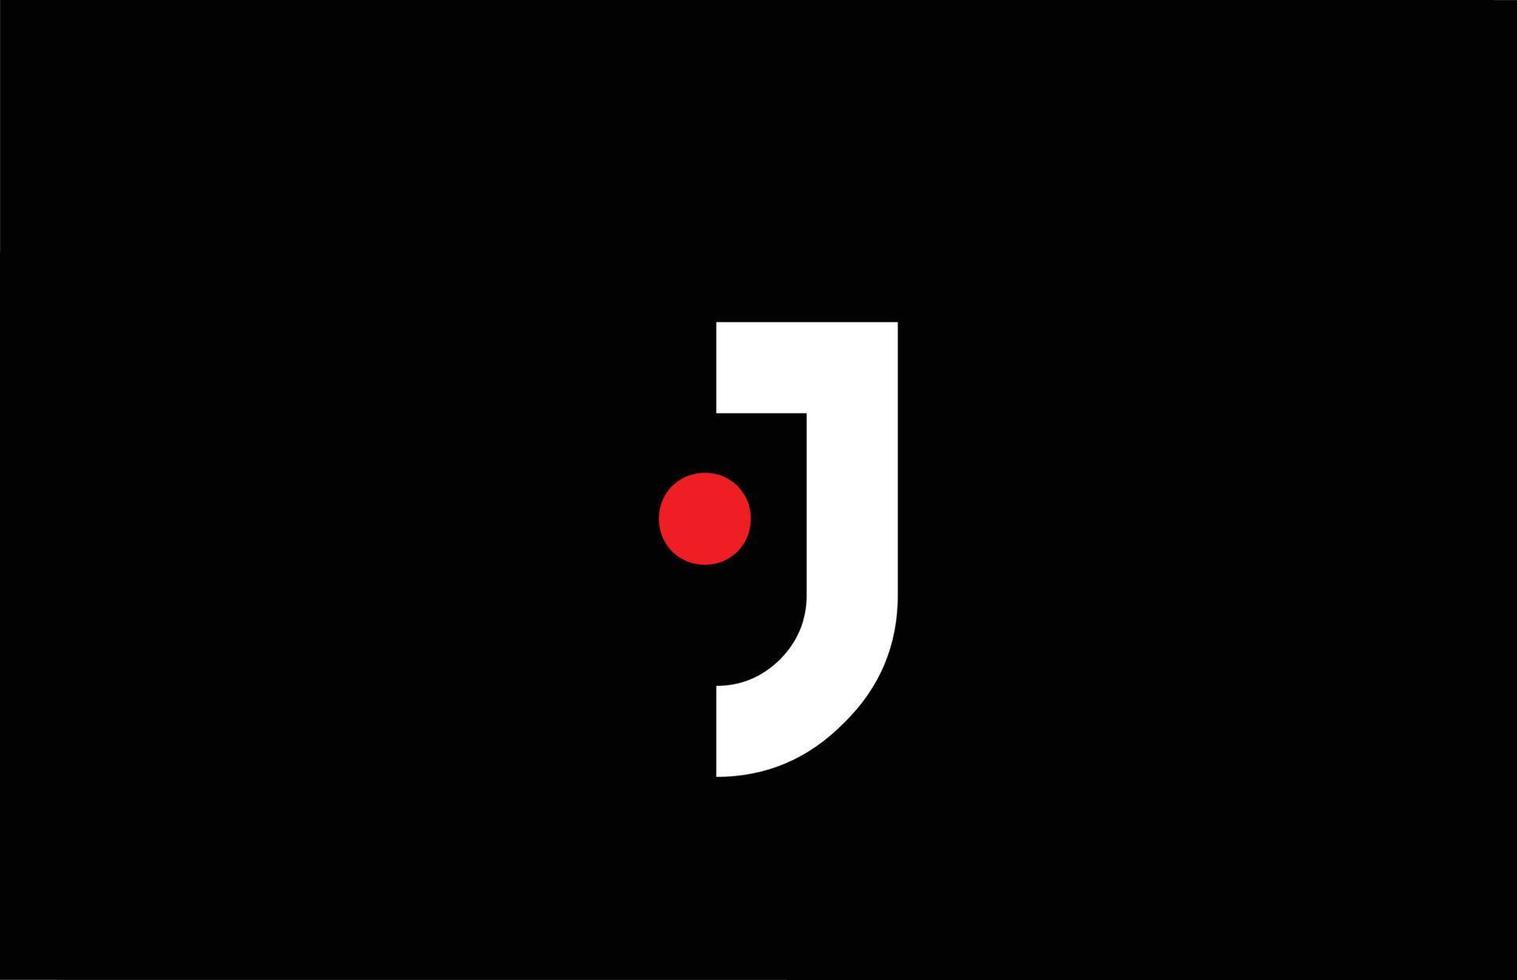 j design de logotipo de ícone de letra do alfabeto. modelo criativo para empresa e negócios com ponto vermelho em branco e preto vetor